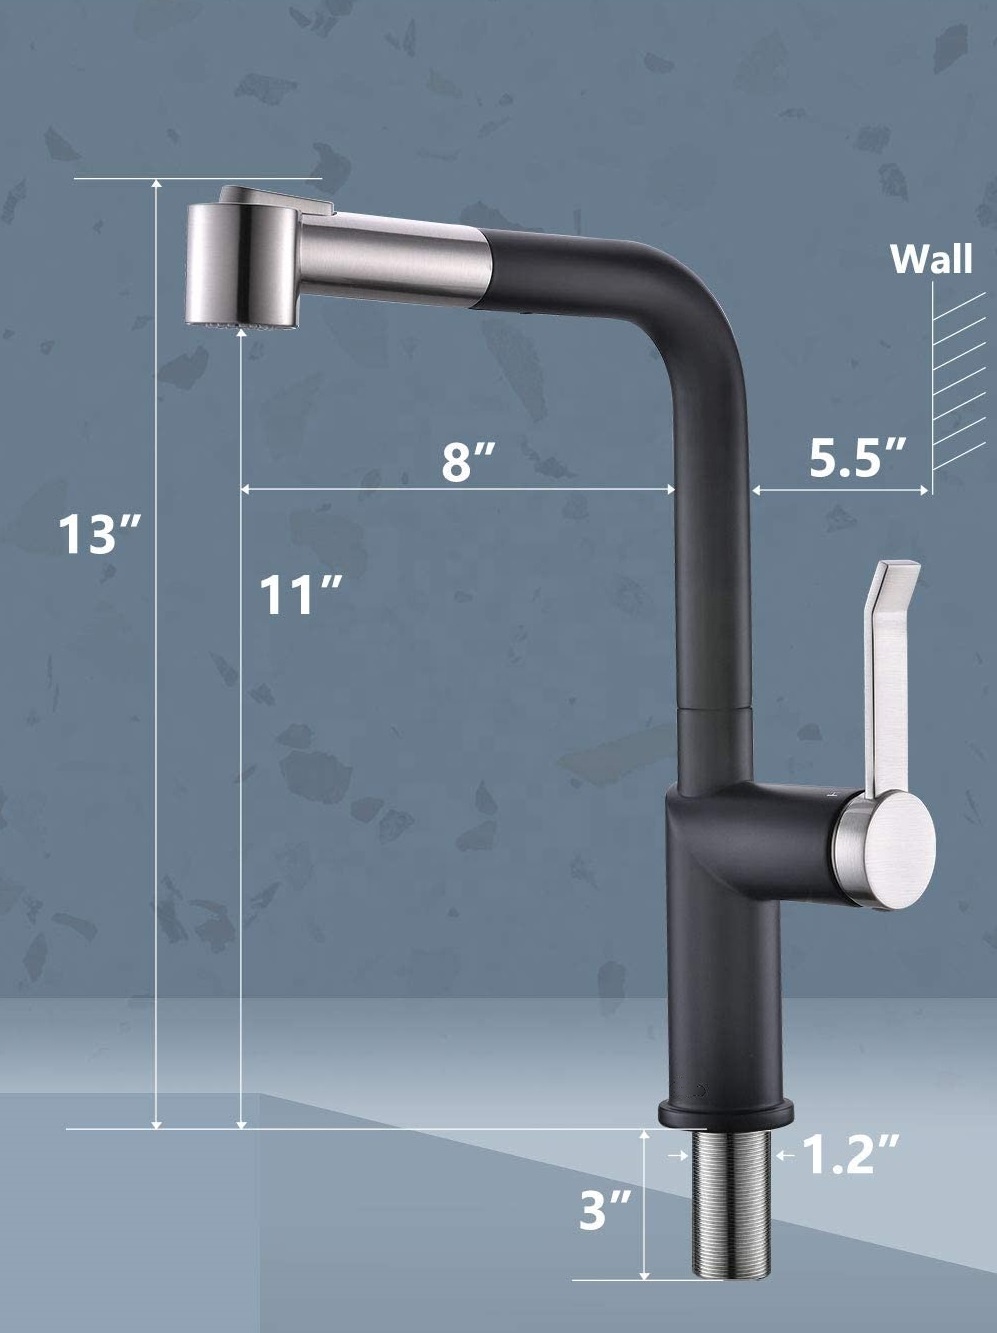 Nouveau design robinets noirs en acier robinet de cuisine extractible robinet de cuisine robinet d'évier